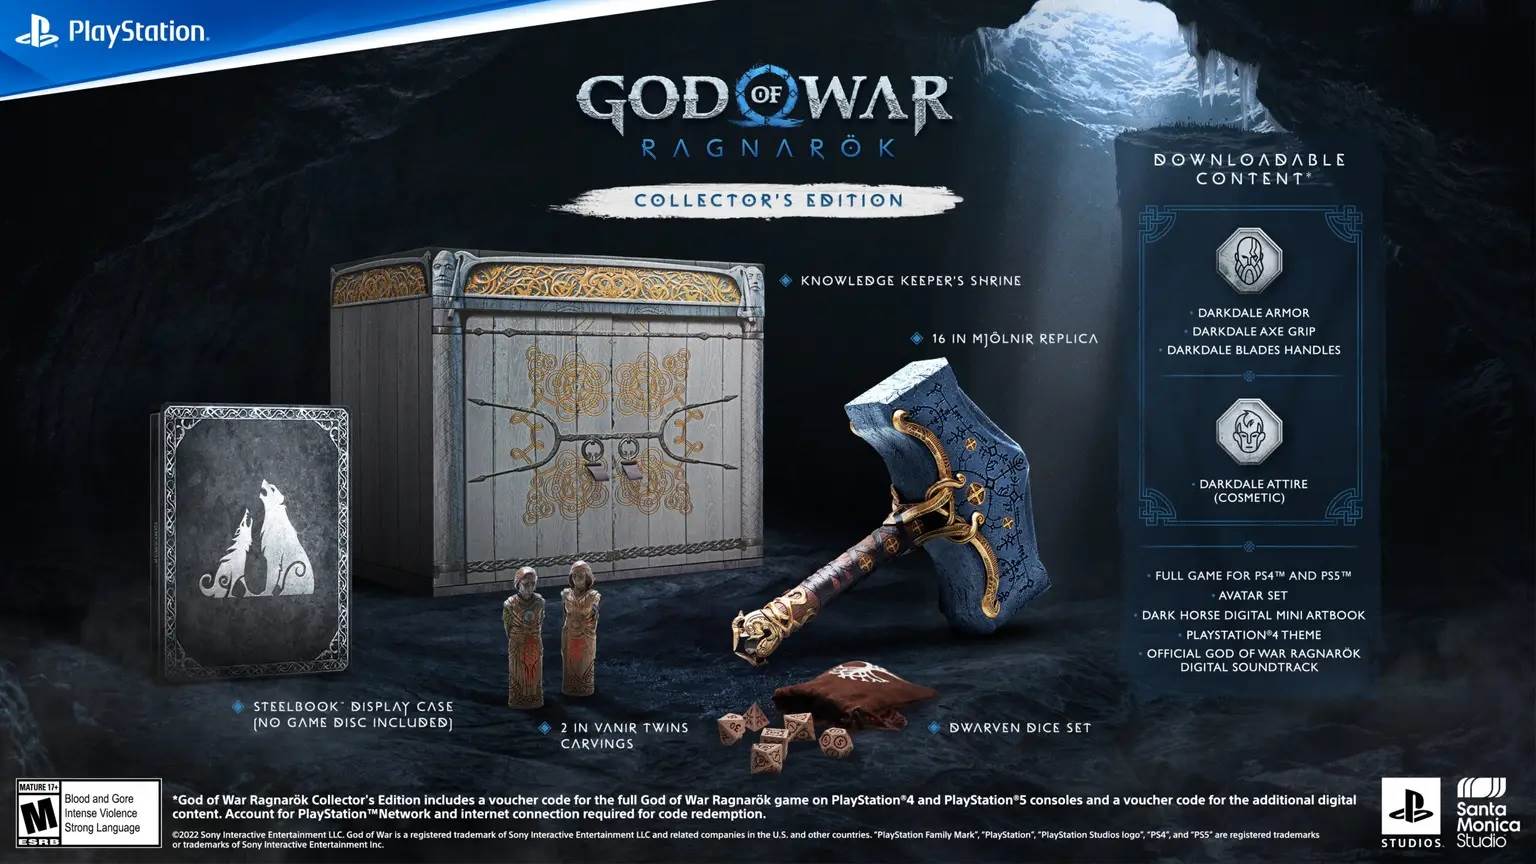  God of War Ragnarök – Collector’s Edition.jpg 